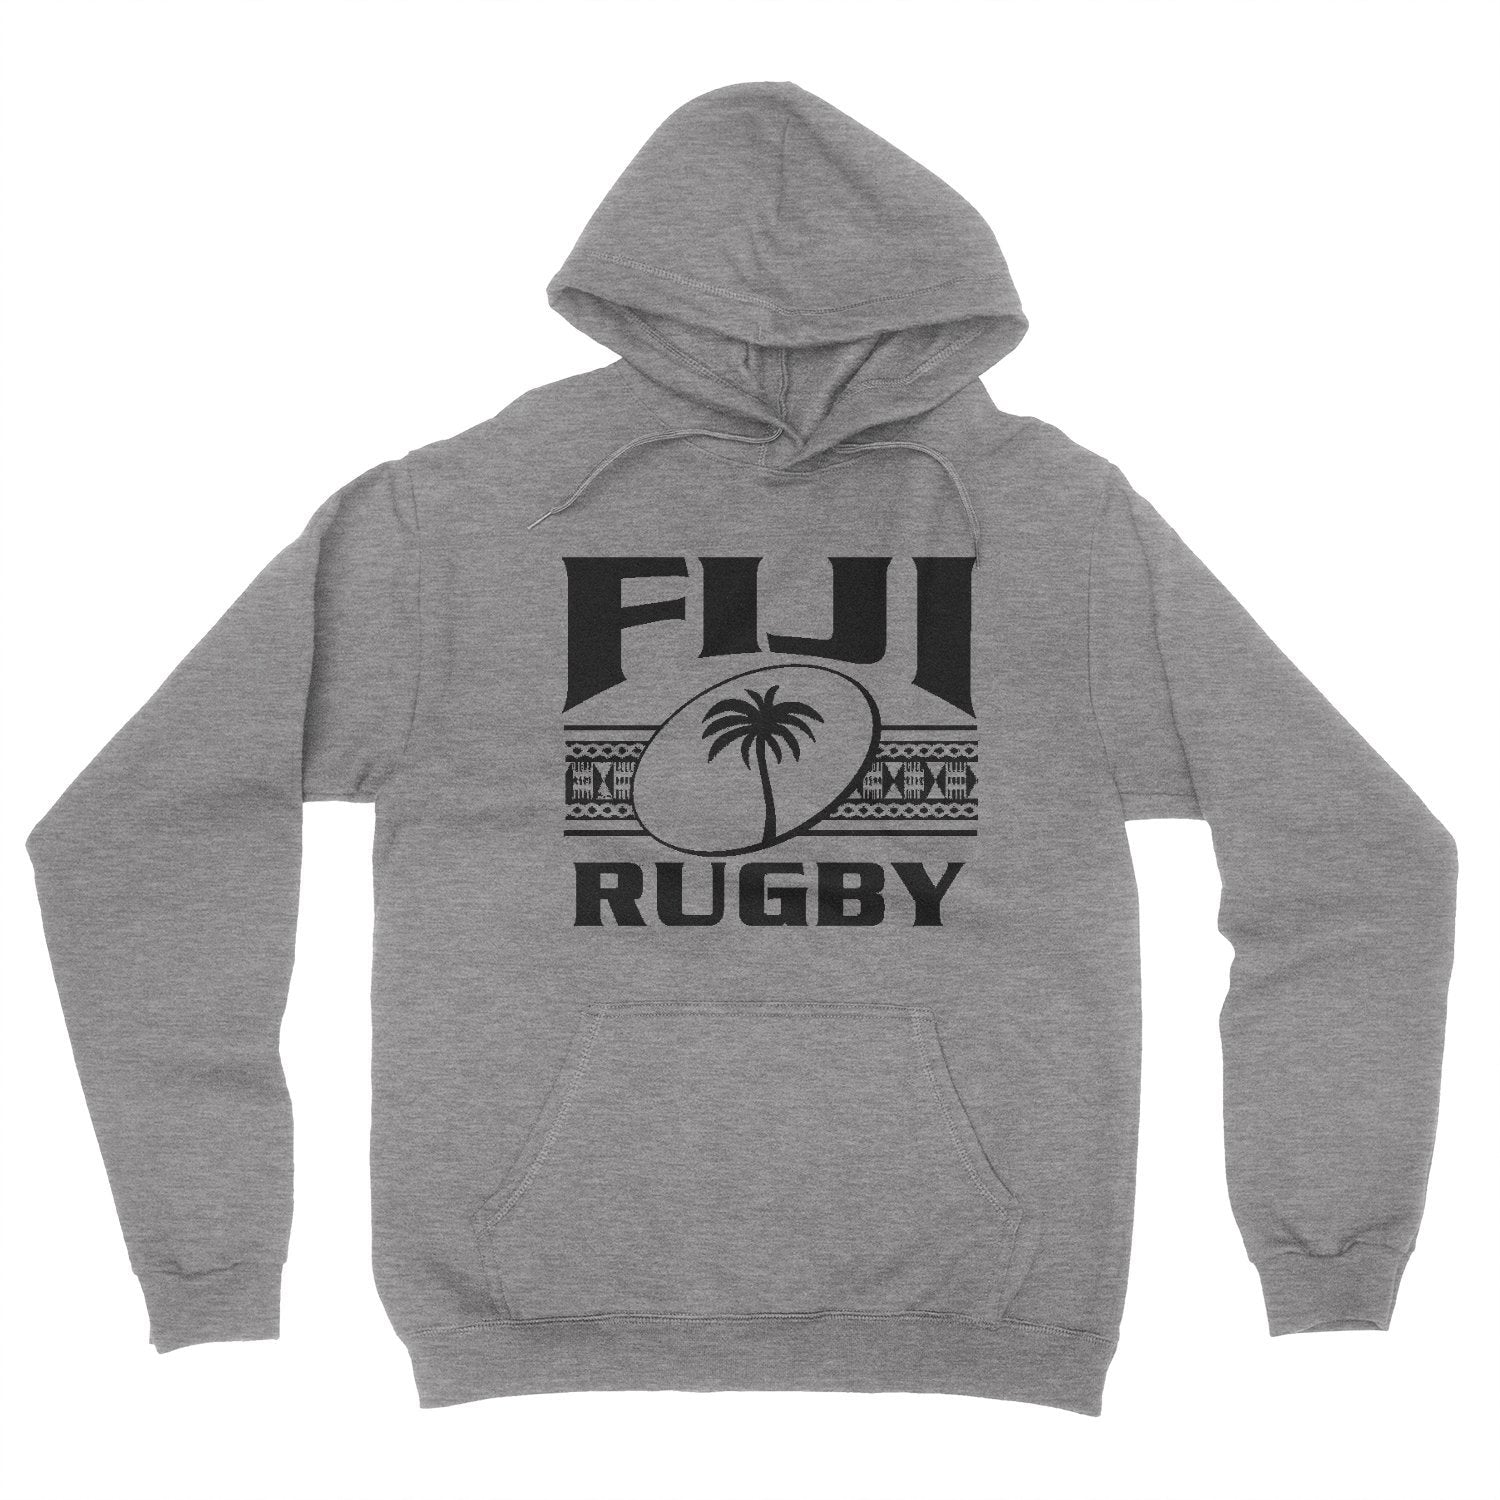 Hoody - Fiji Rugby Hoody